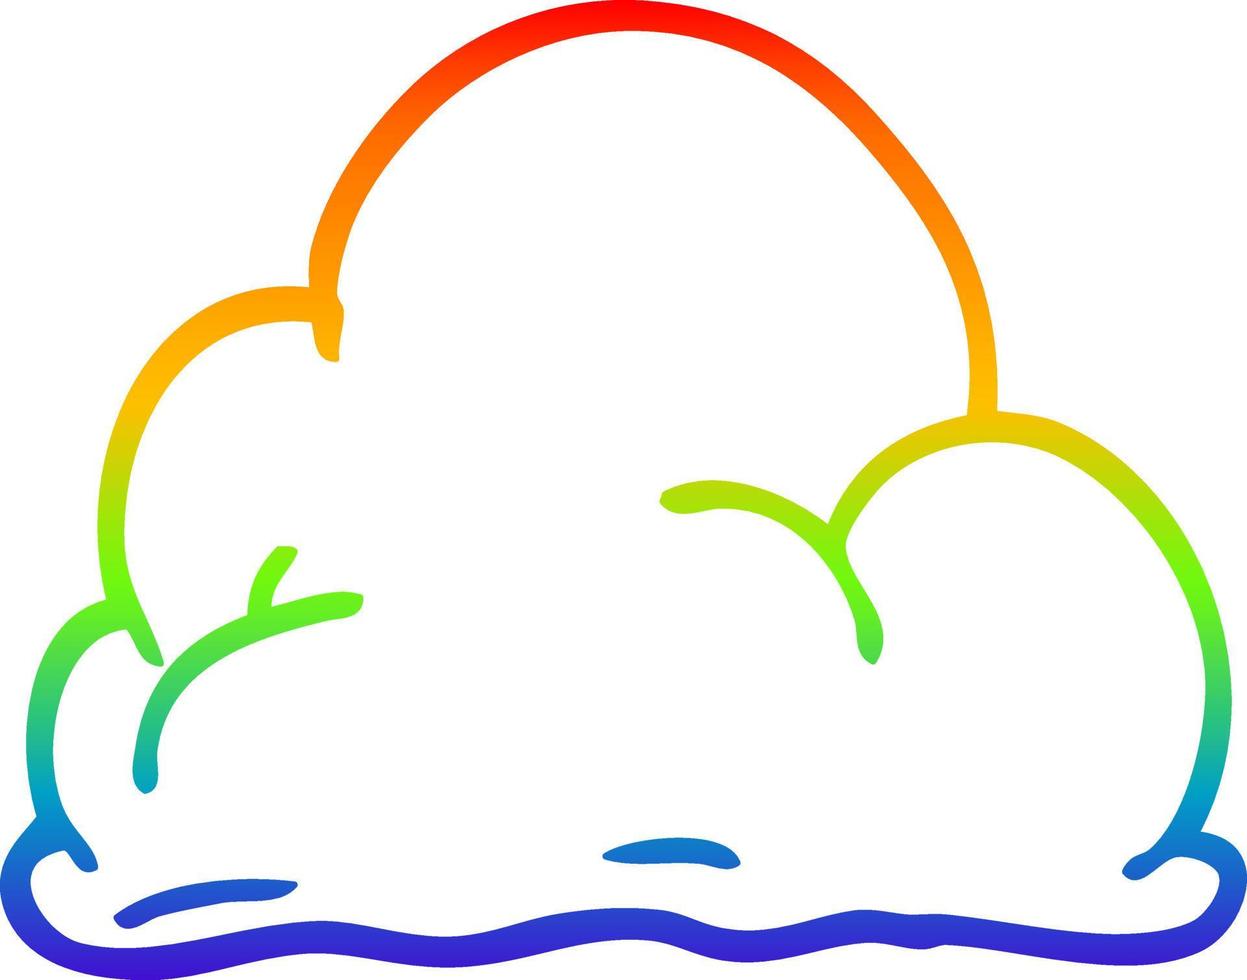 arcobaleno gradiente linea disegno cartone animato soffici nuvole bianche vettore